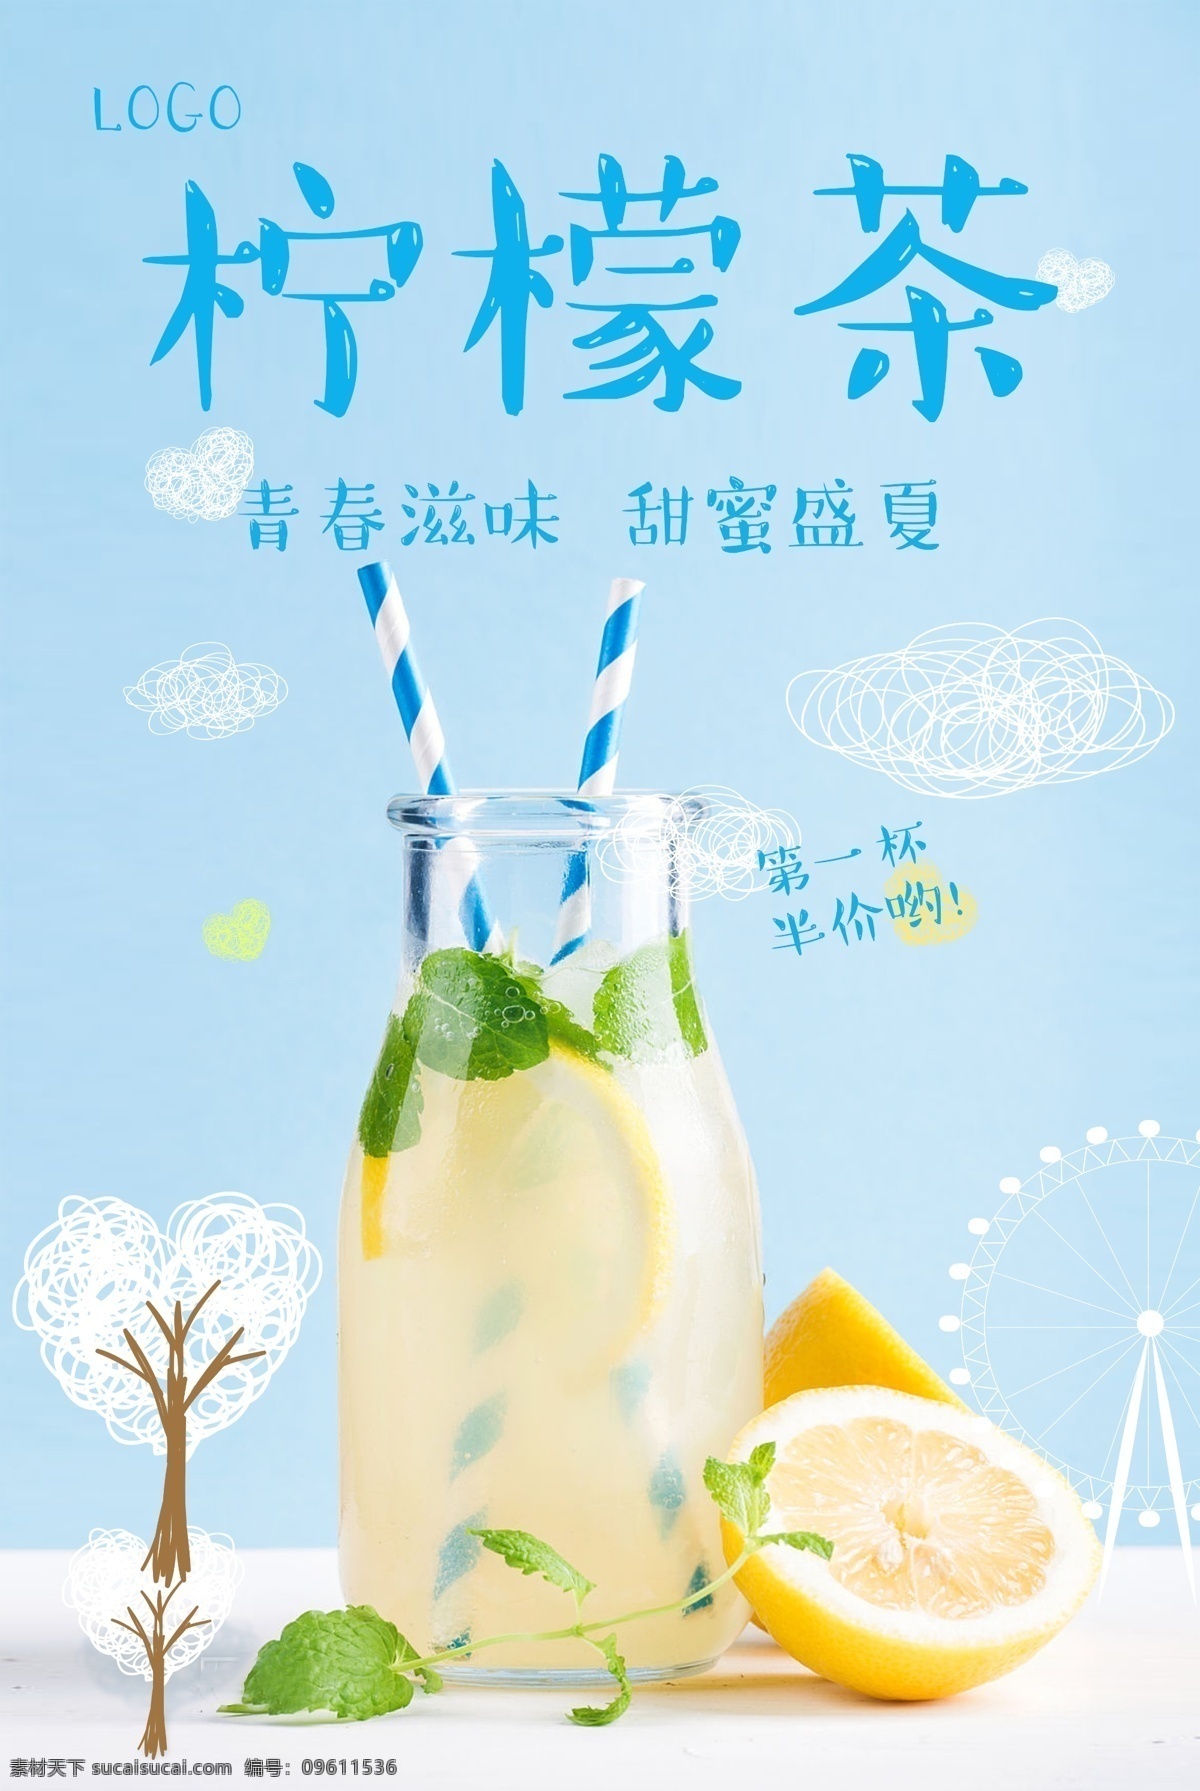 柠檬茶海报 饮品海报 凉爽夏季 果汁 柠檬水 柠檬茶 奶茶海报 水果茶海报 水果 蓝色